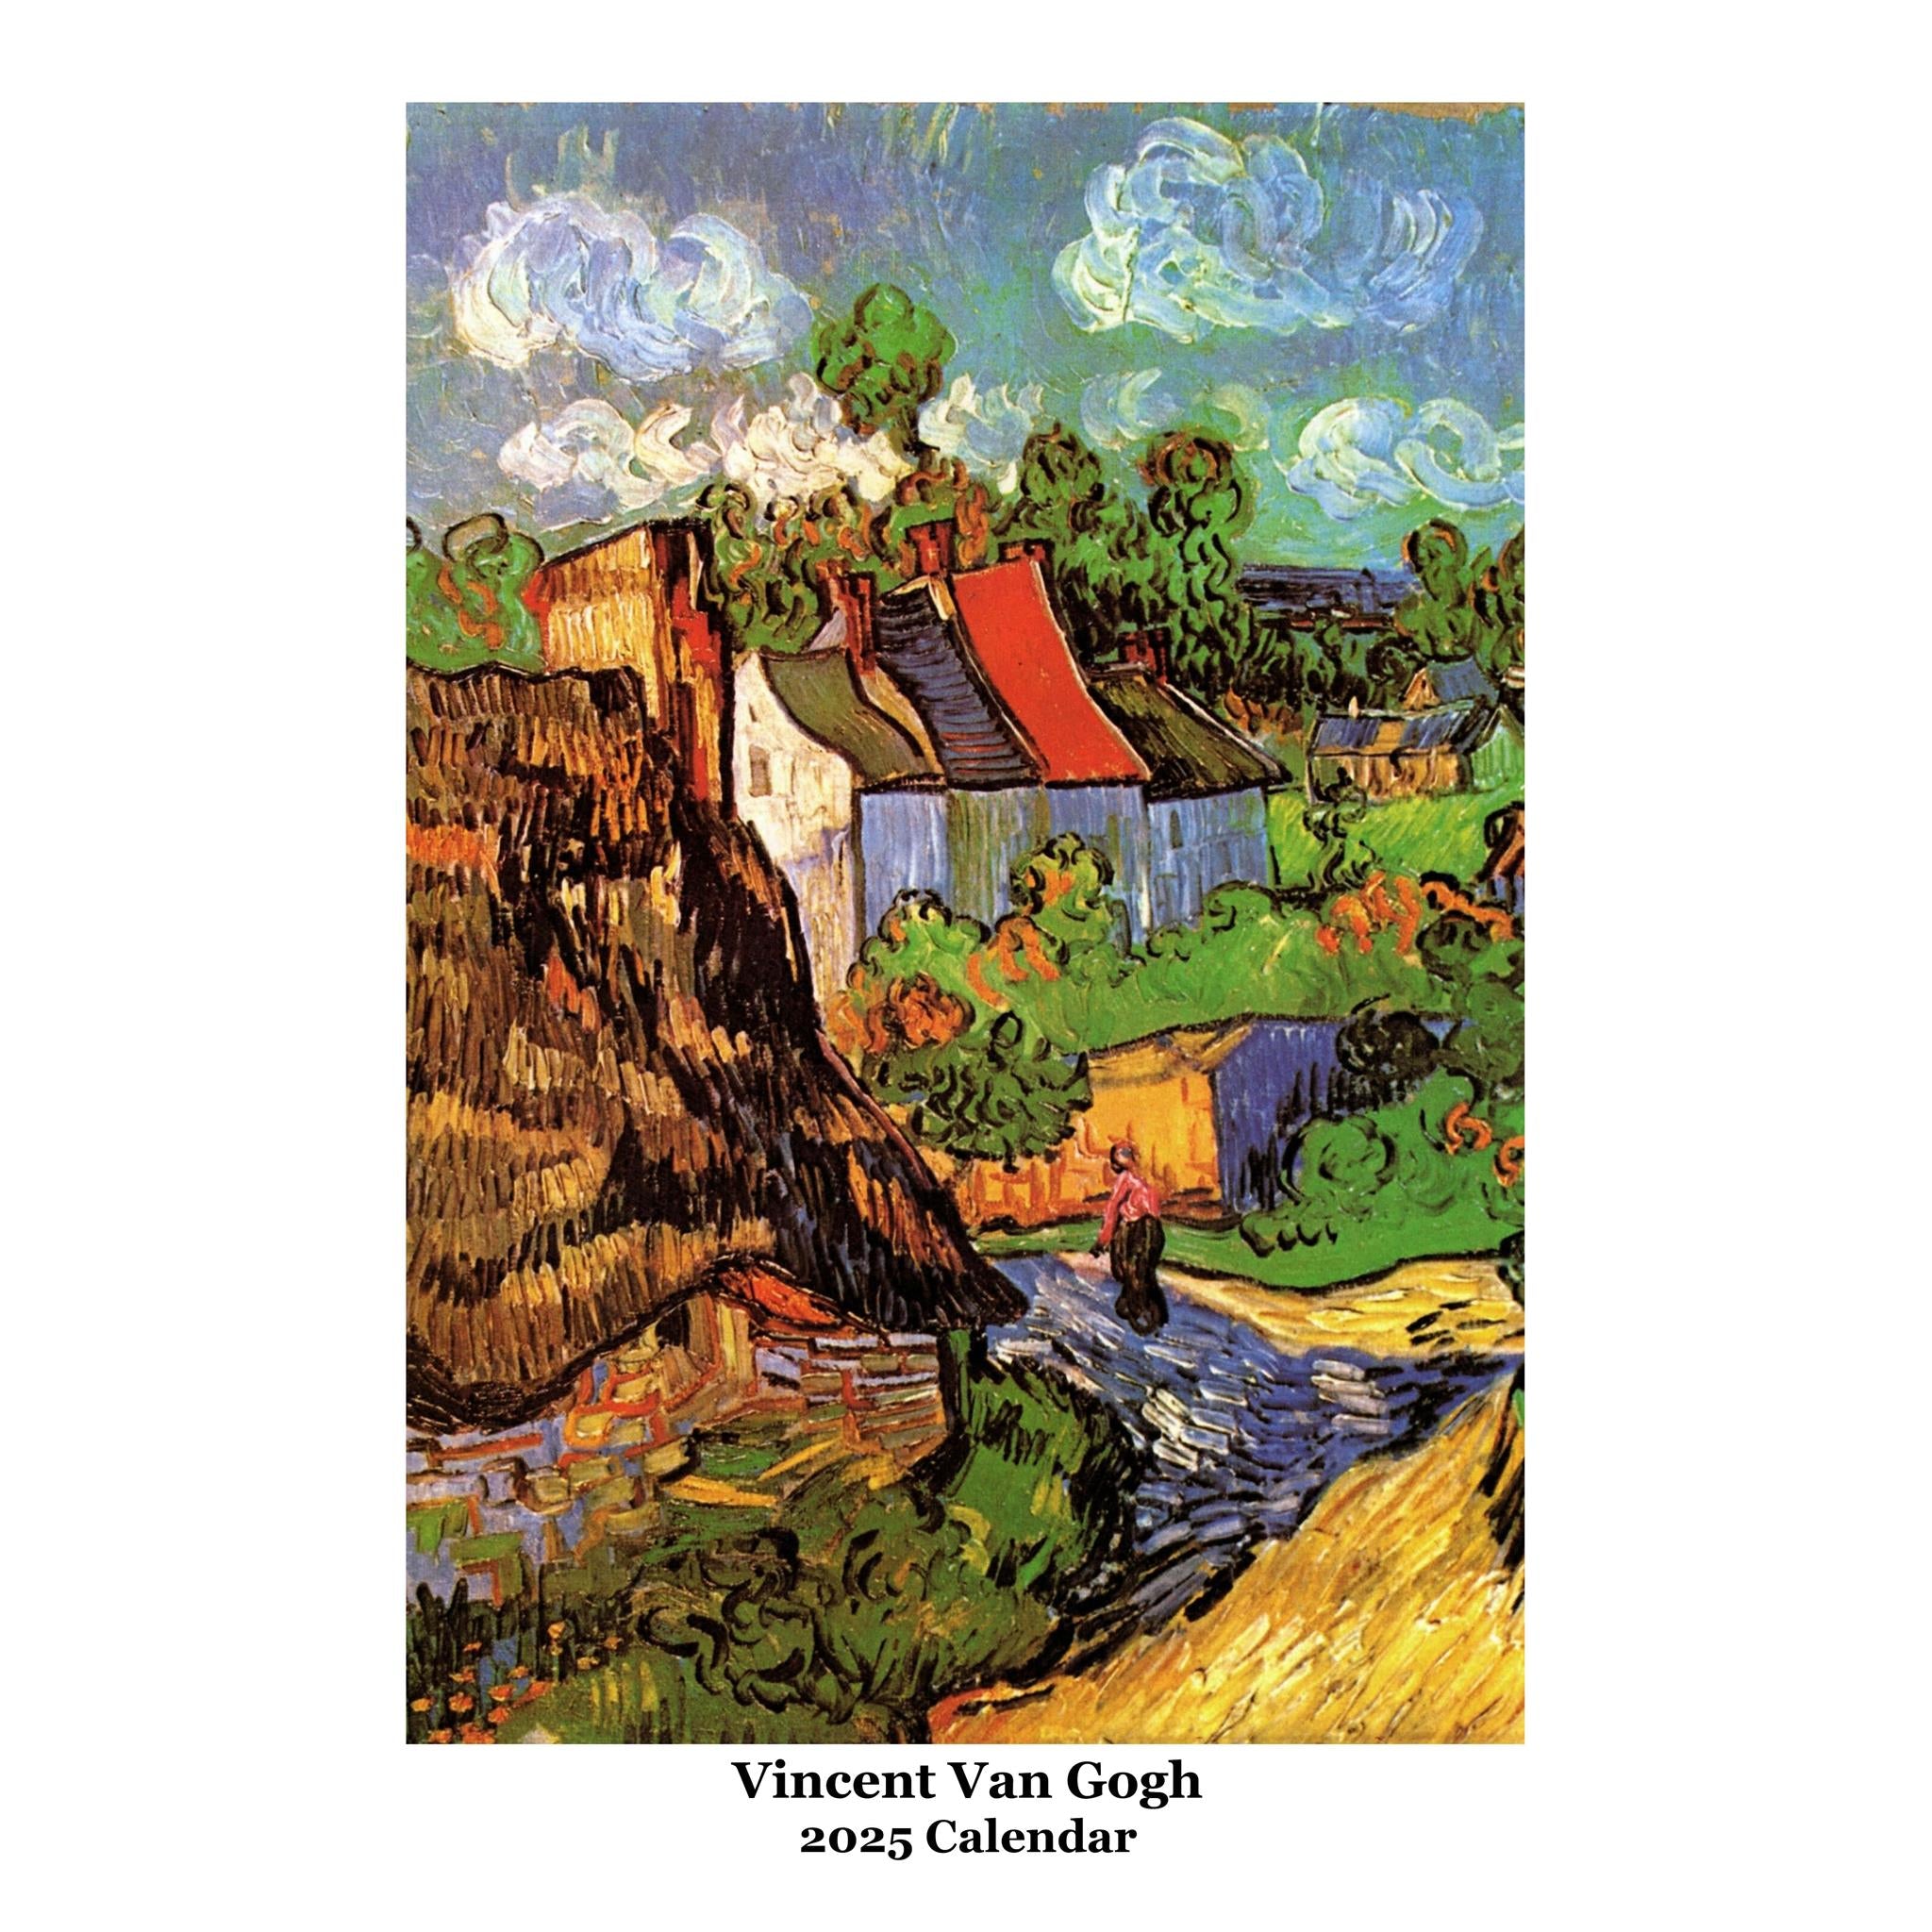 Vincent Van Gogh Poster 2025 Calendar